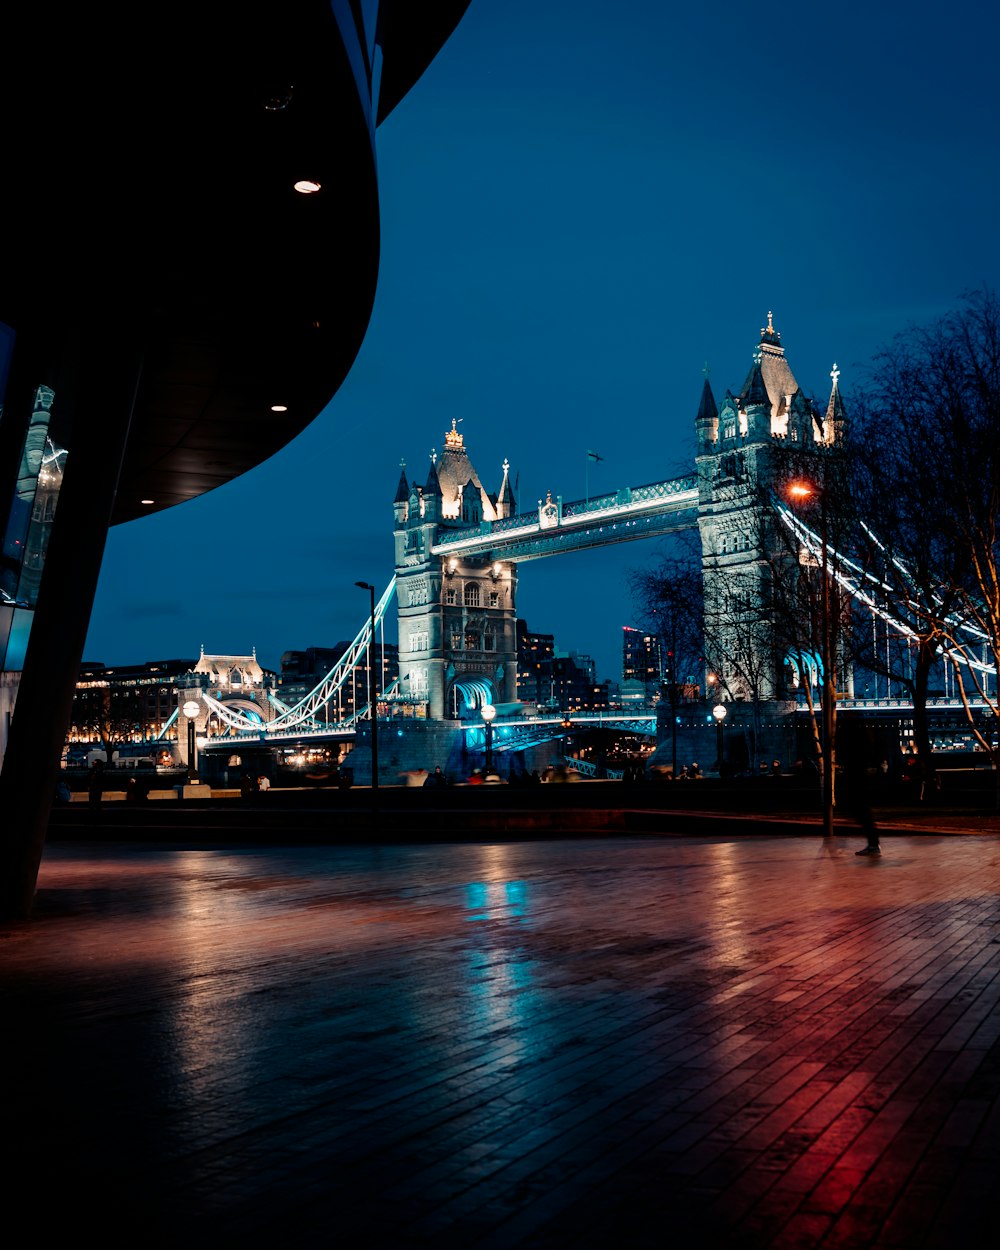 Le Tower Bridge est éclairé la nuit